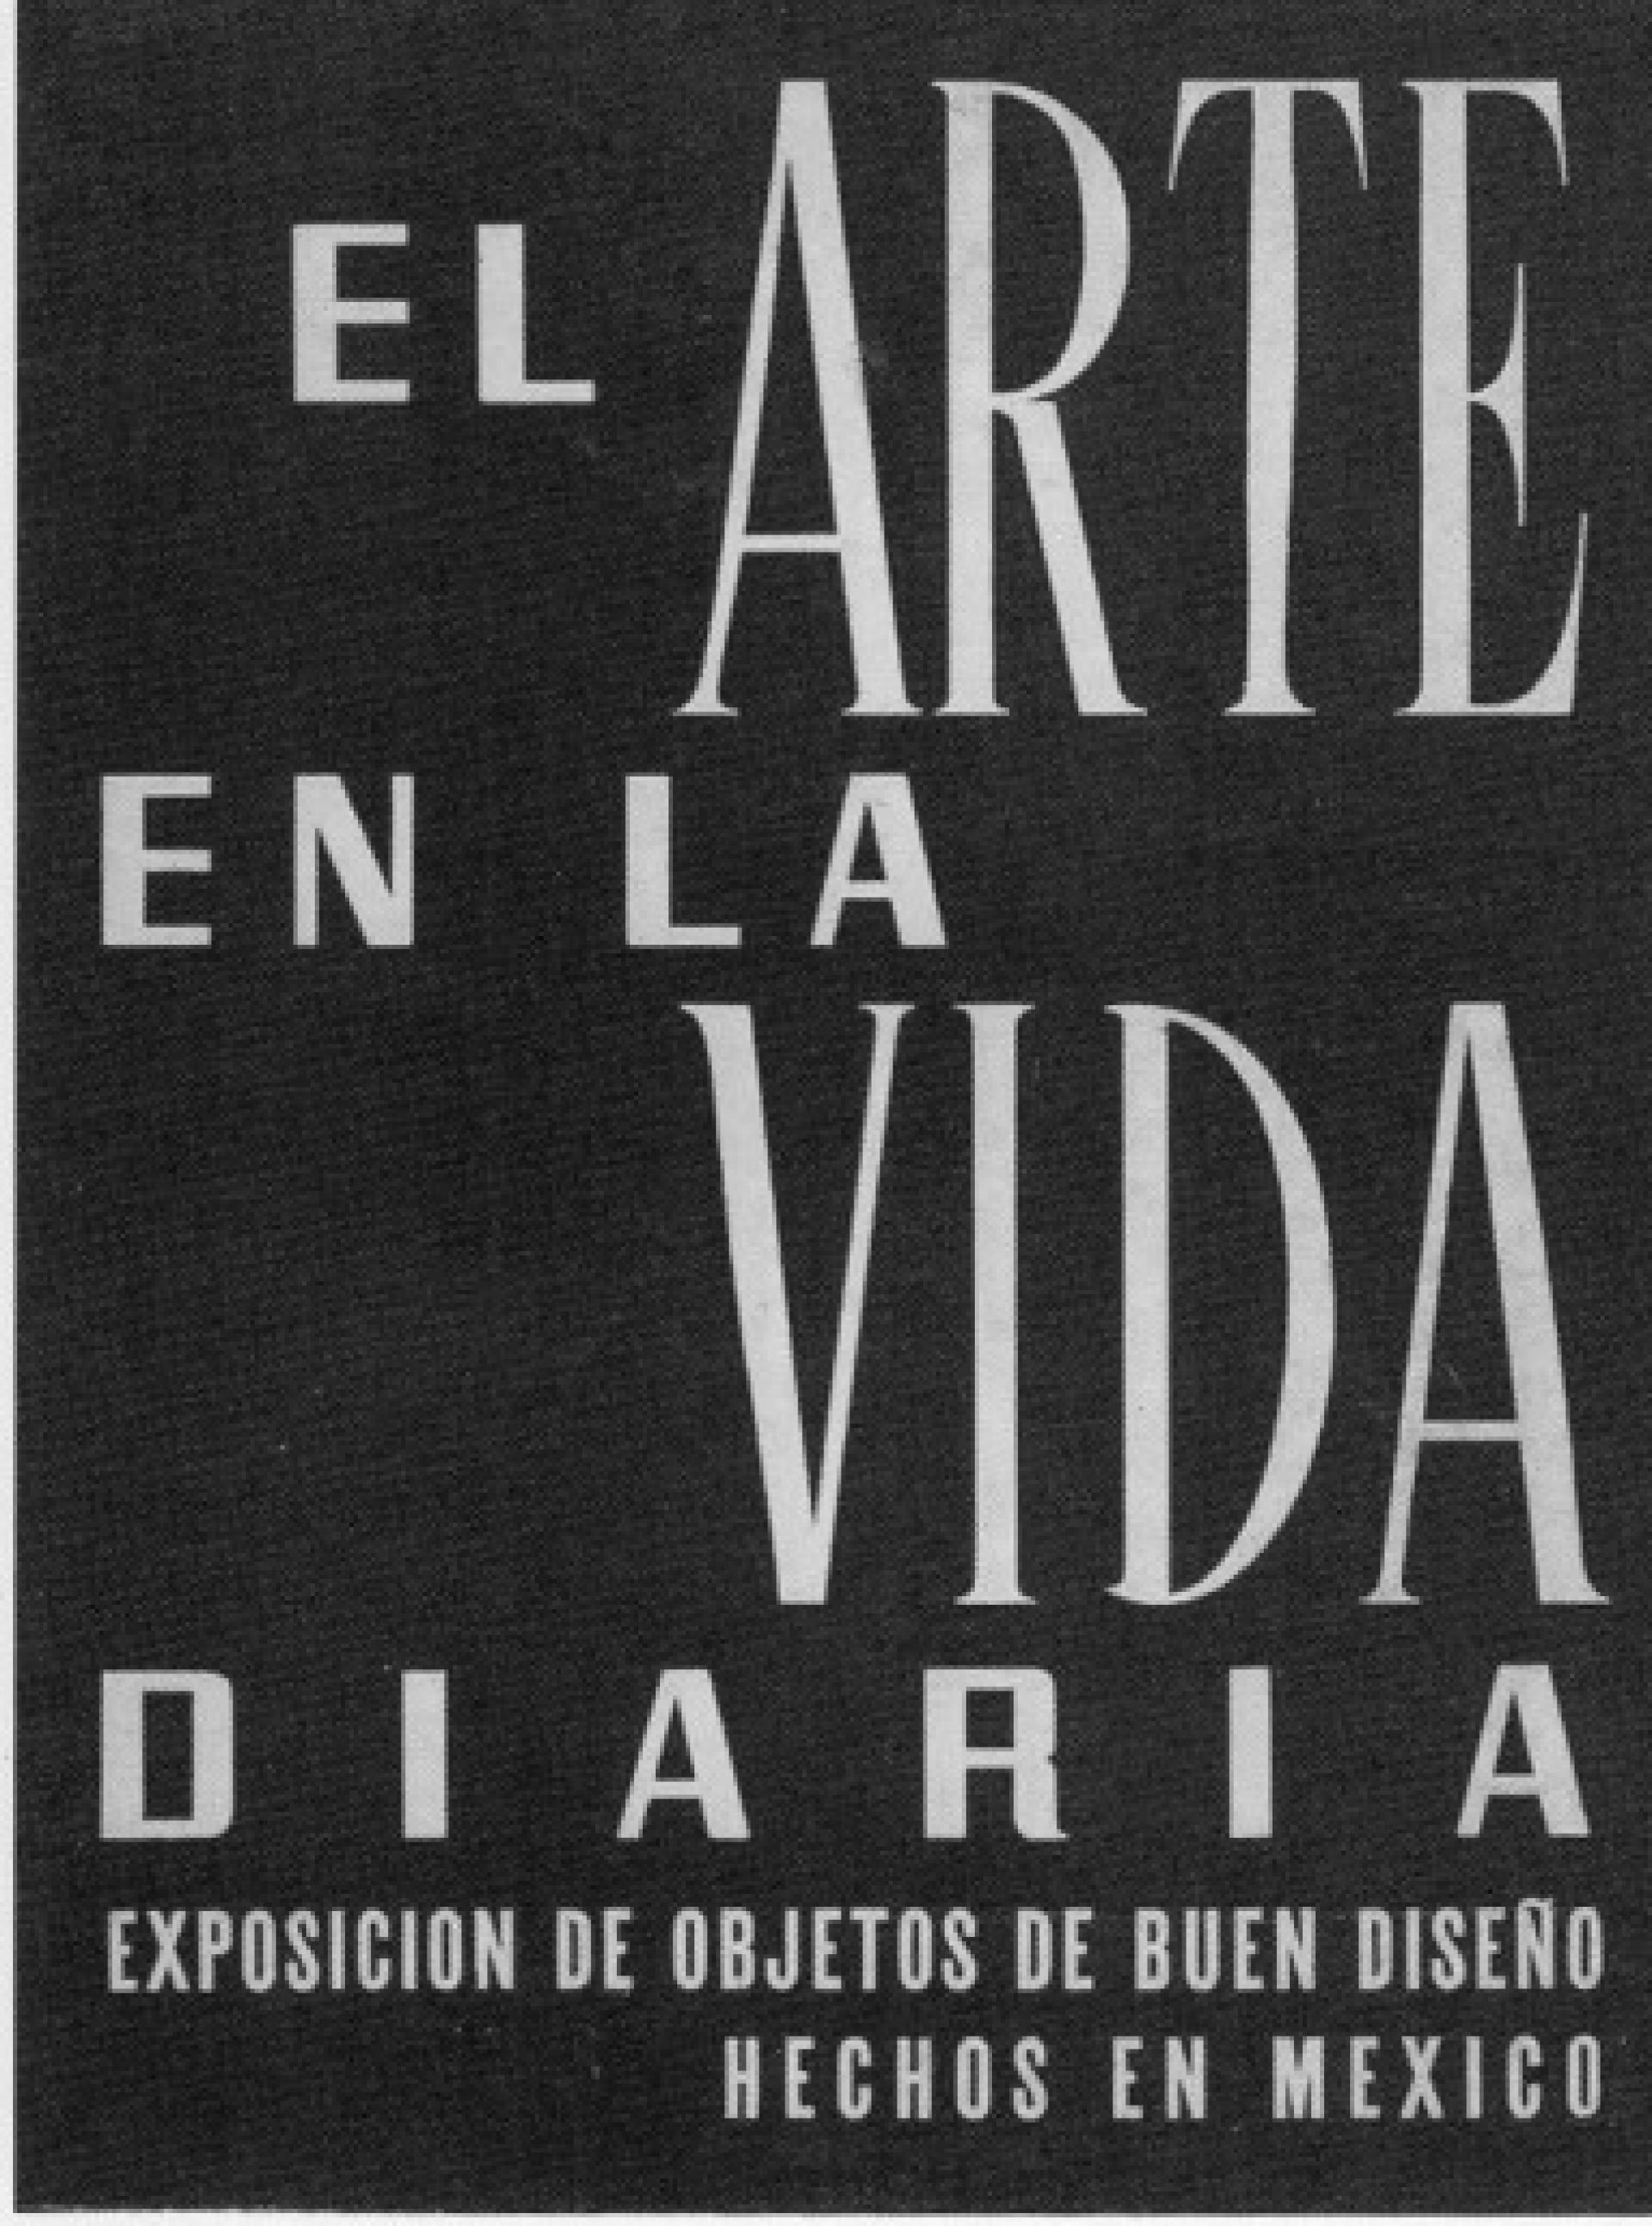 Poster of the exhibition “El arte en la vida diaria”. | Photo via Salinas, Oscar. Una vida inquieta, una obra sin igual, UNAM, México, 2001